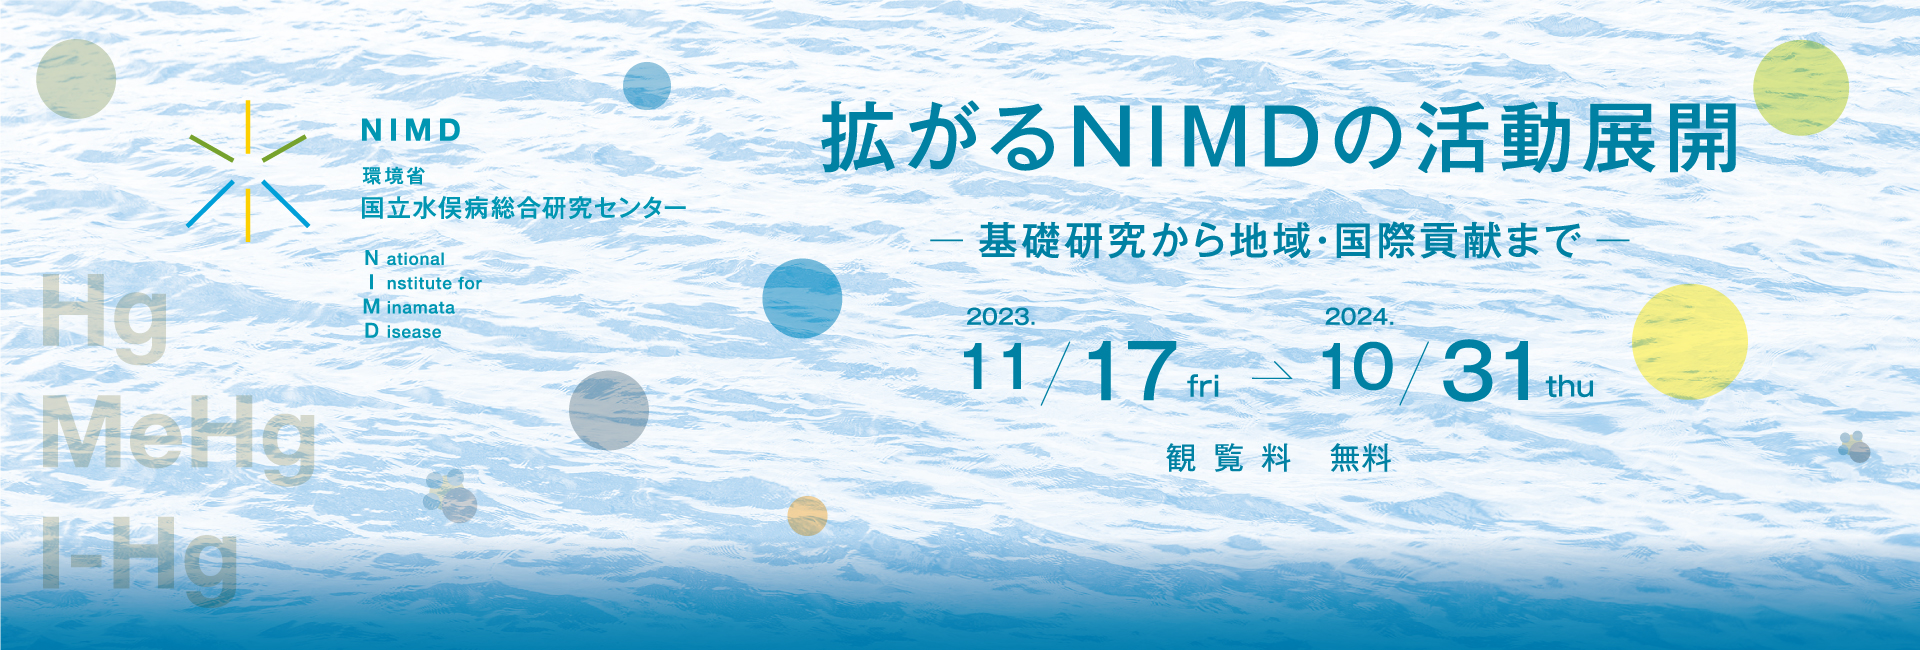 NIMDの地域・国際貢献 世界唯一の水俣病と水銀の研究機関として　観覧料 無料　2022 11/9 wed → 2023 10/31 tue